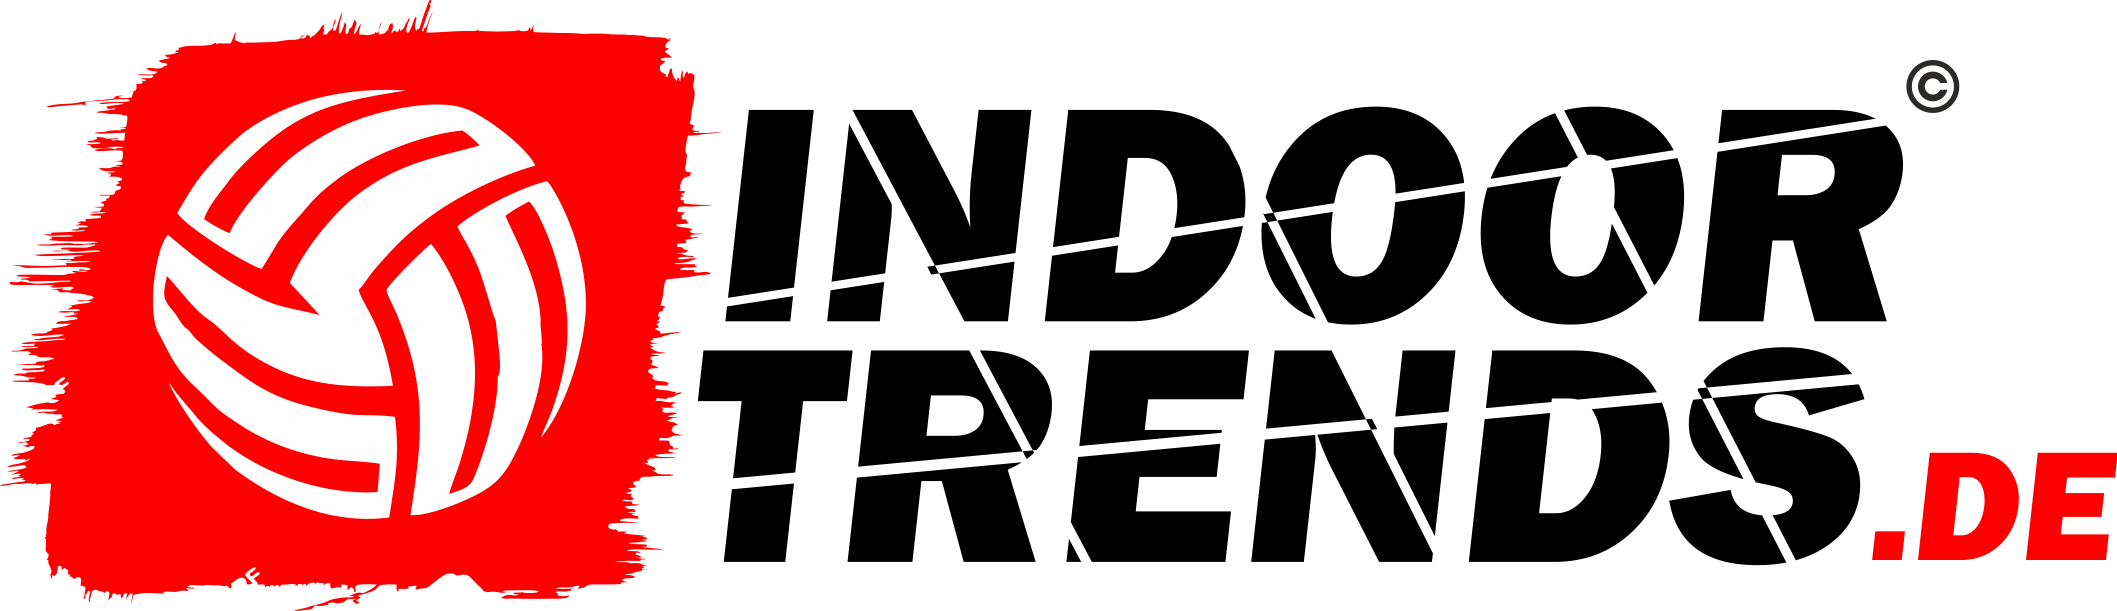 indoortrends_logo